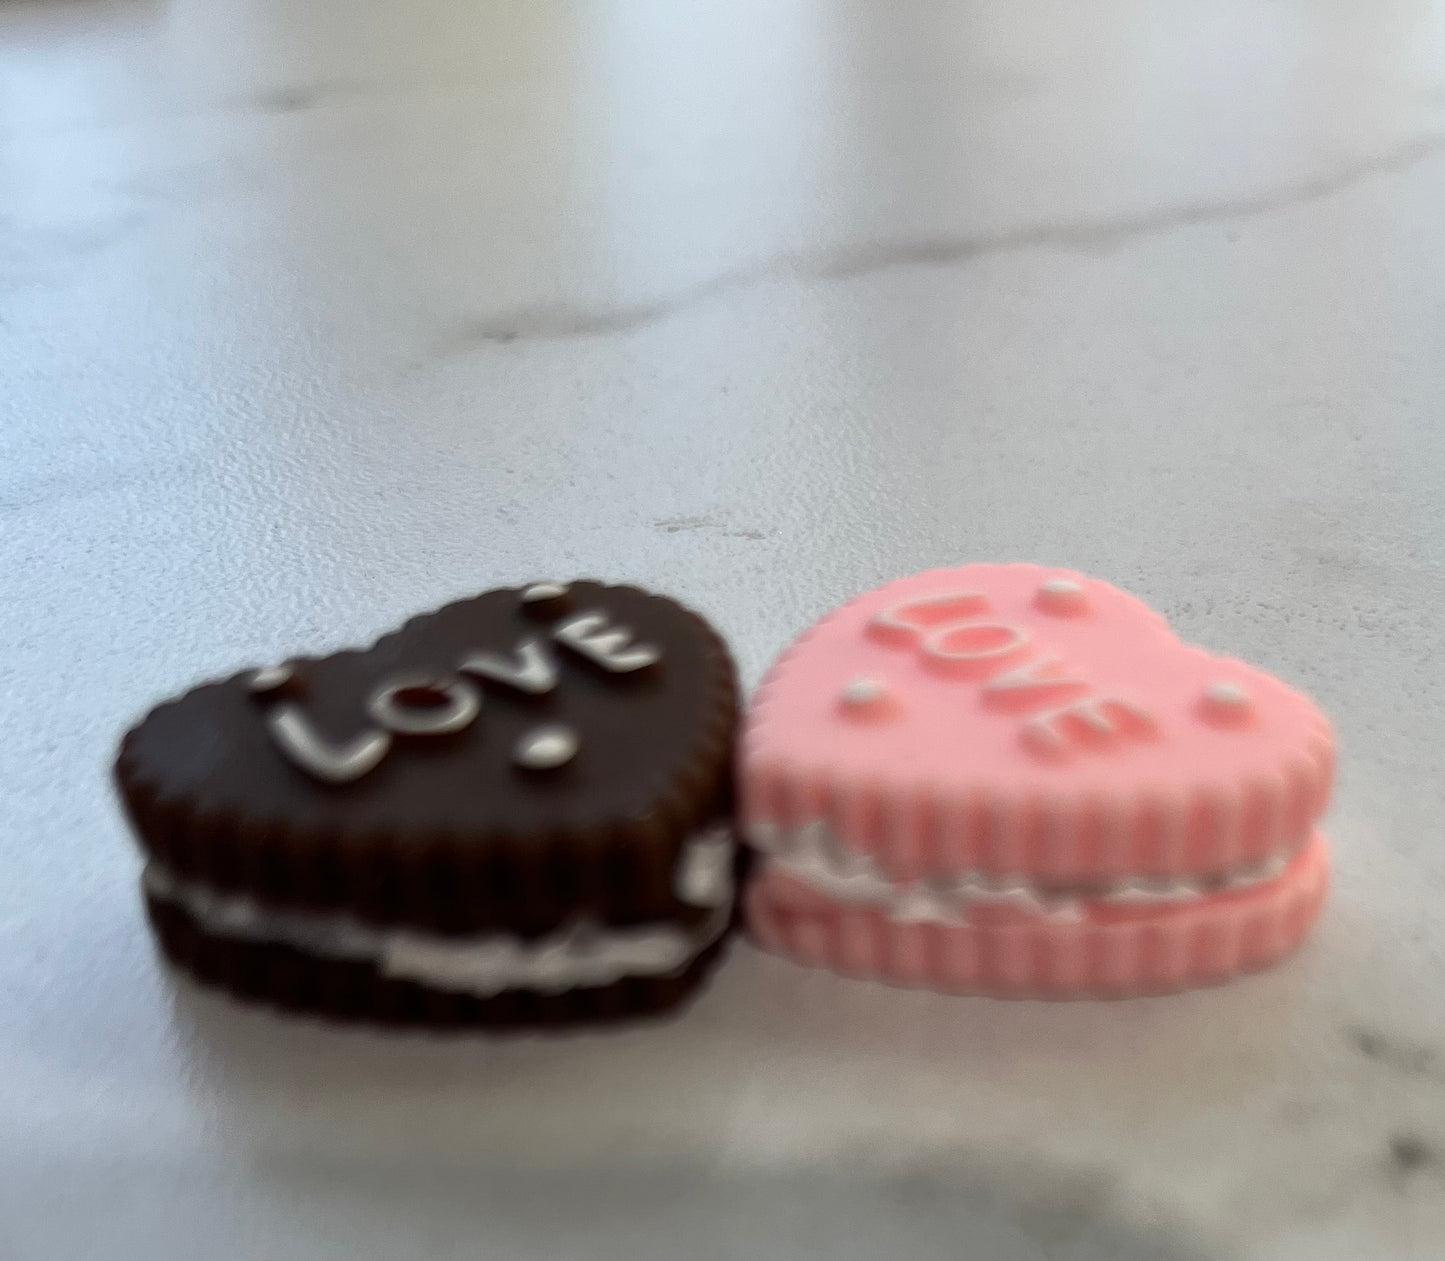 (2) Love Cookies